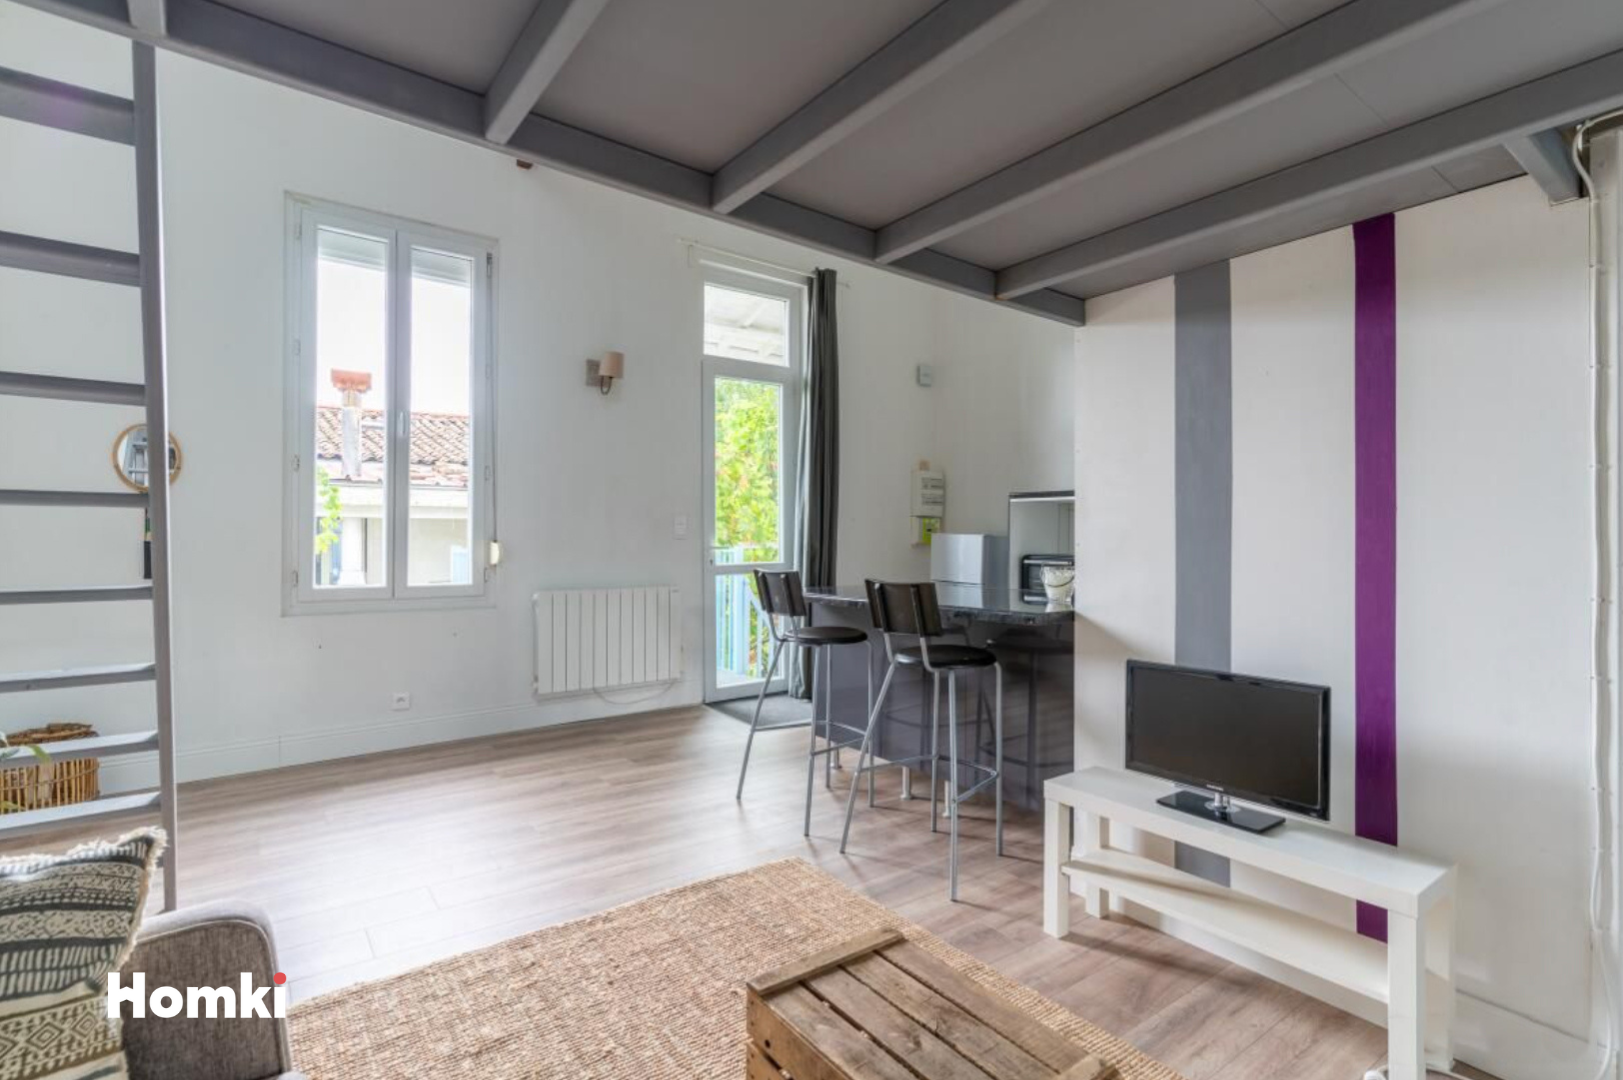 Homki - Vente Appartement  de 32.0 m² à Bordeaux 33300